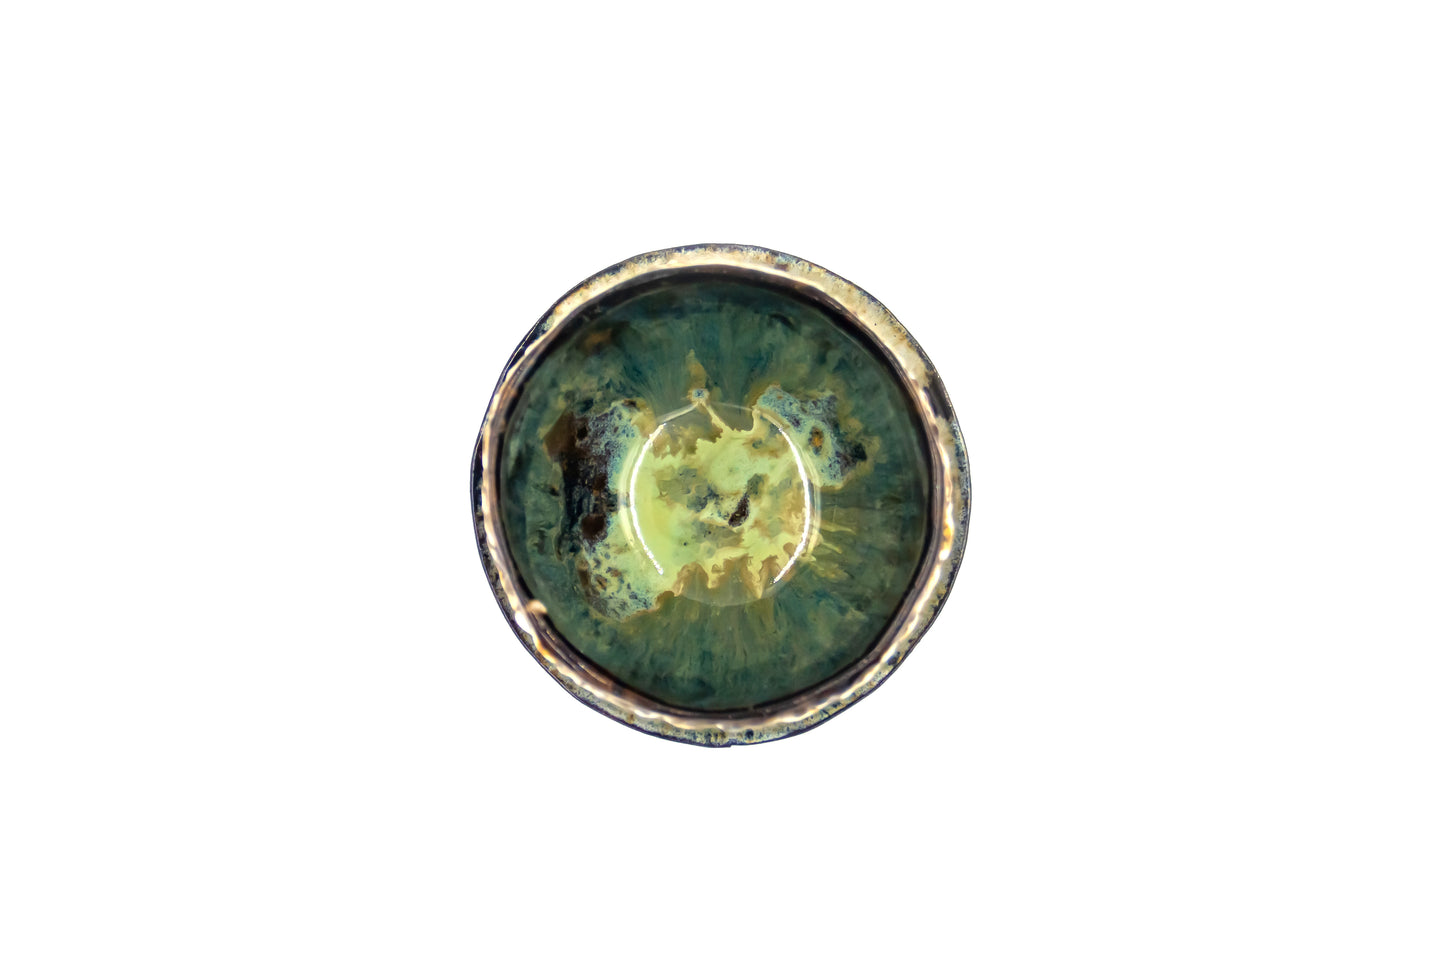 Miseczka ceramiczna w kolorze zielono-brązowym ze spodkiem